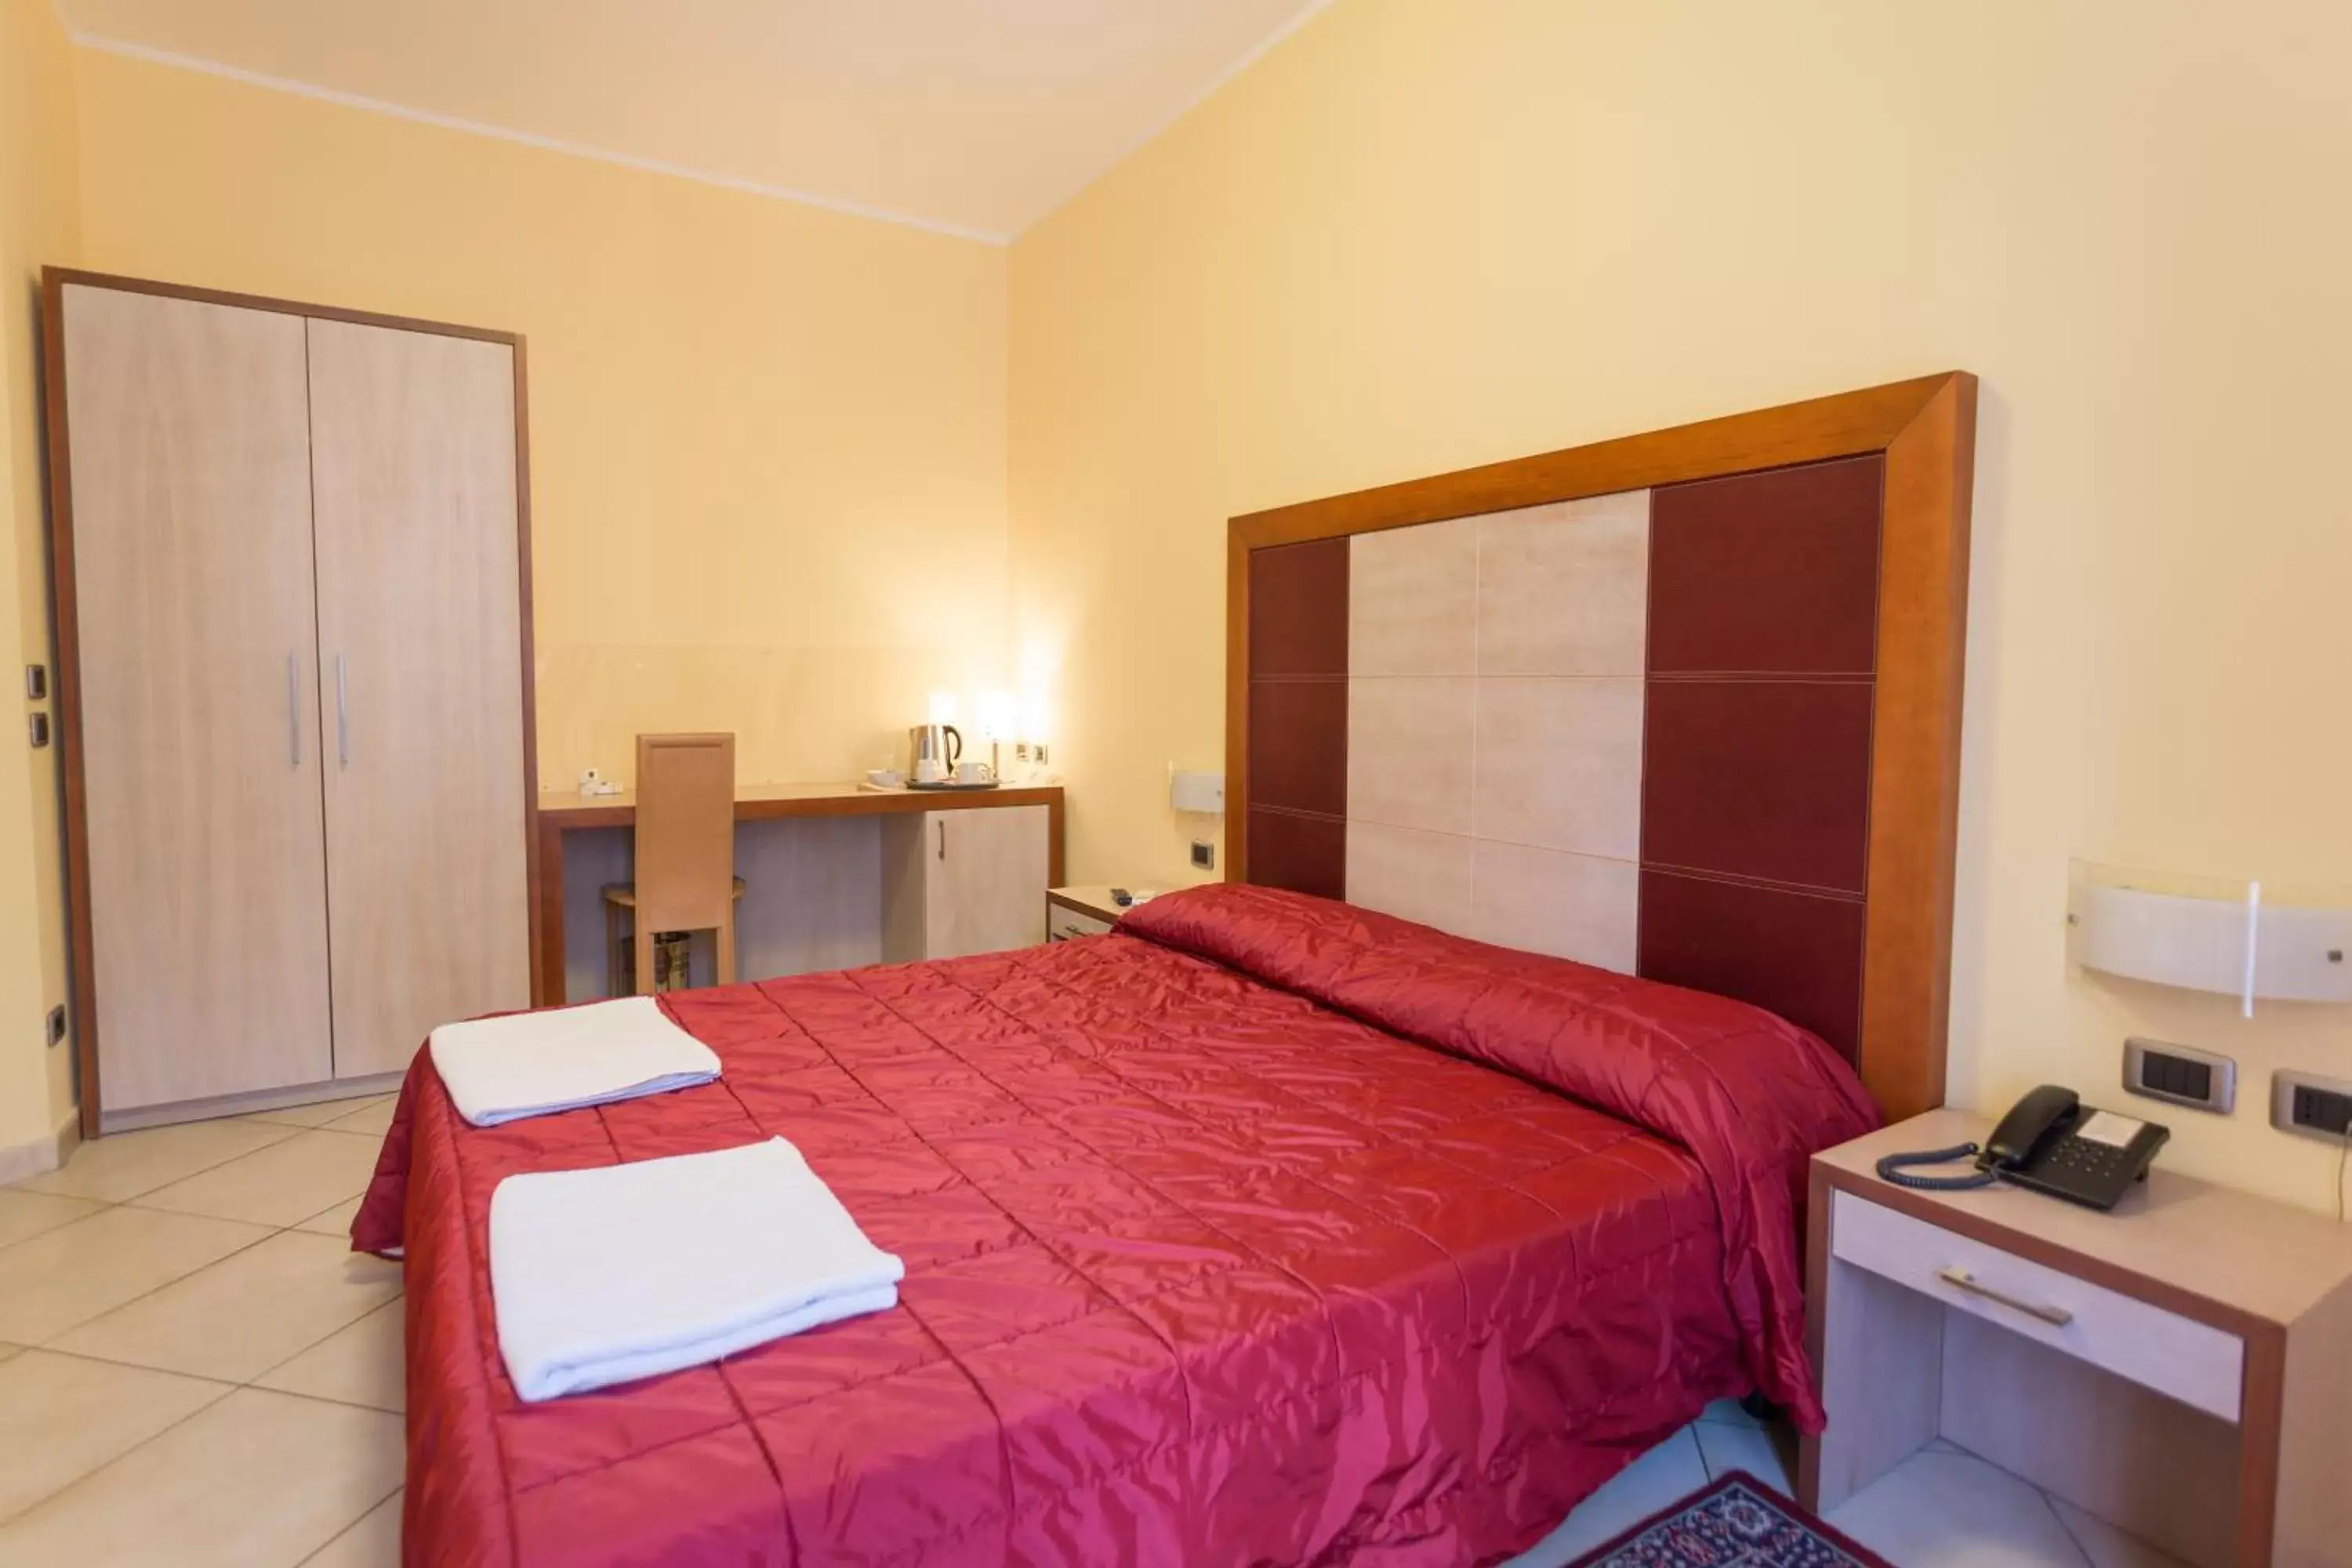 Room Photo in Hotel Conte Ruggero